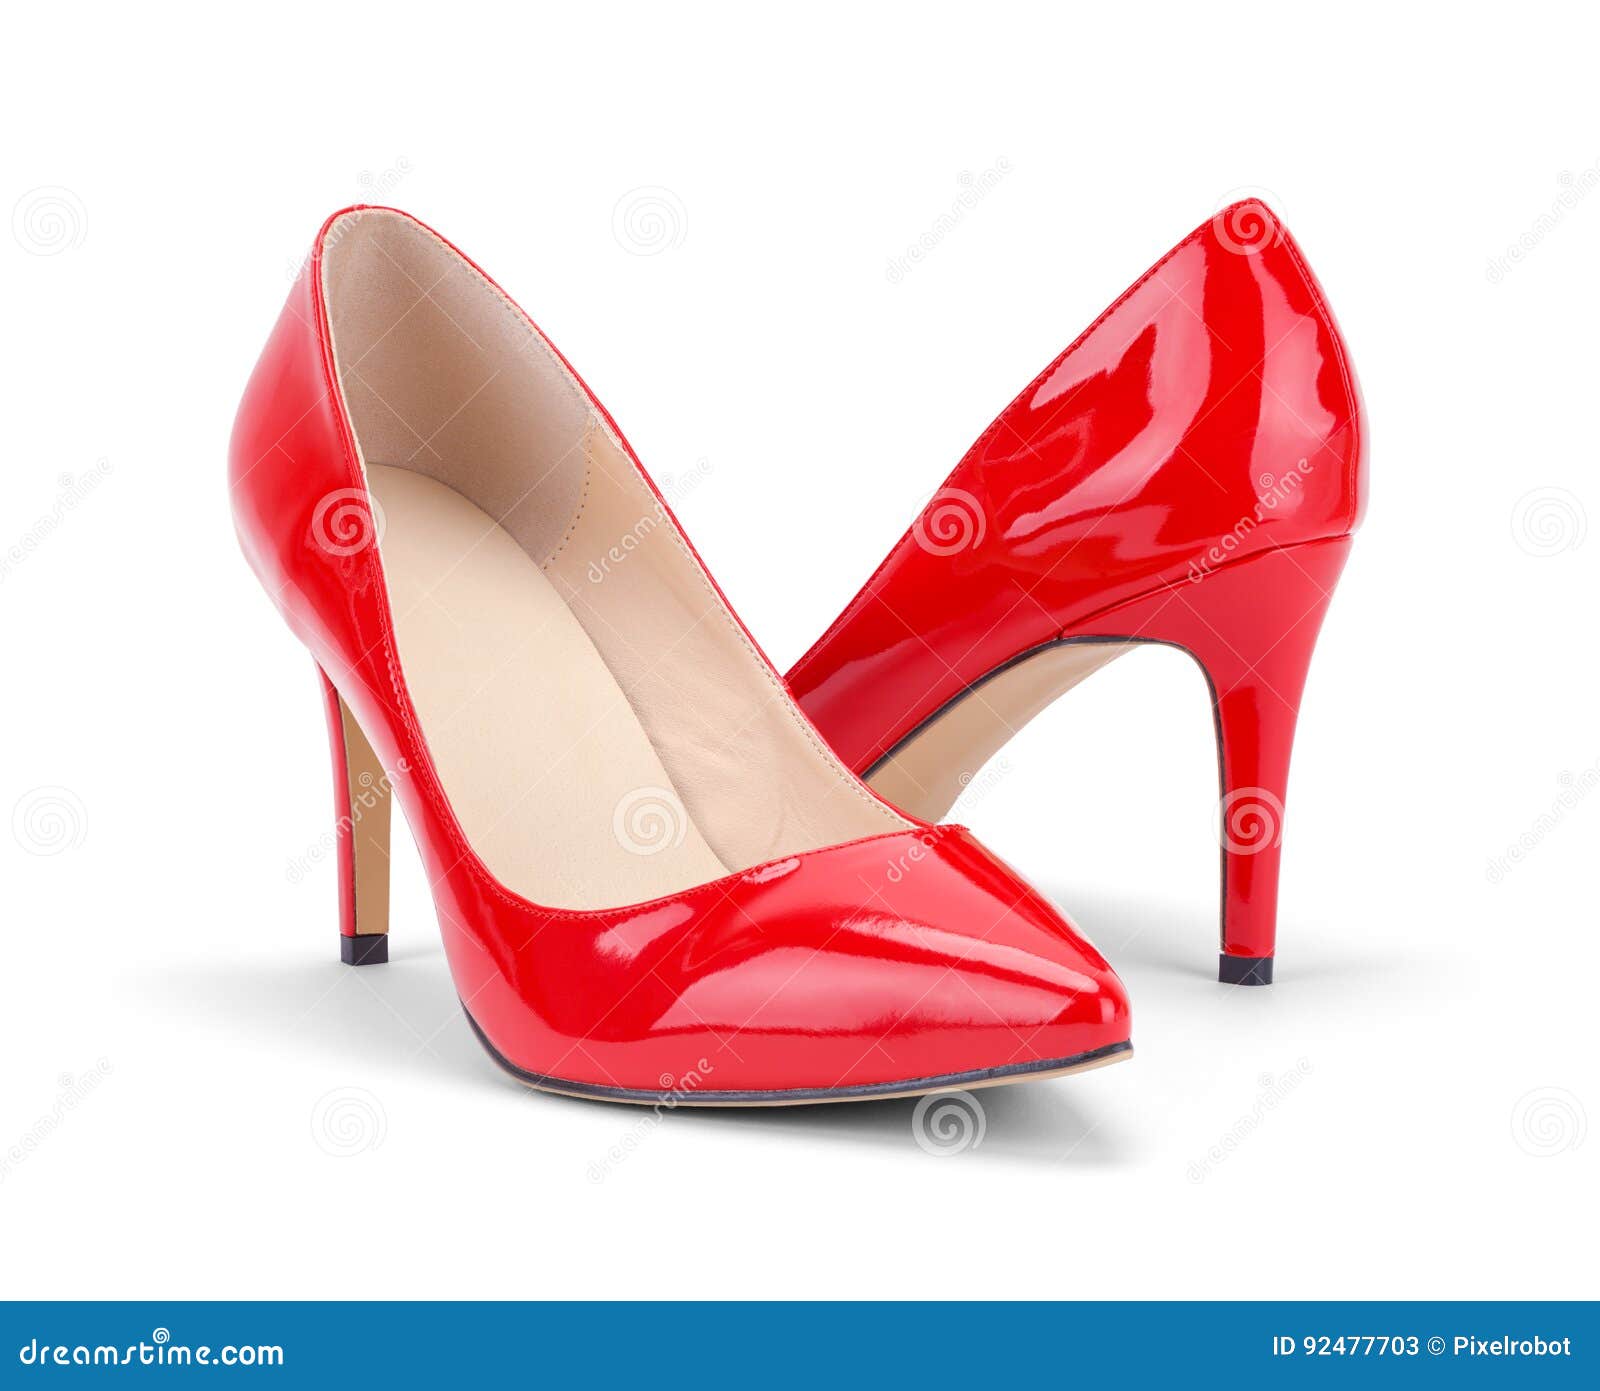 Girls Red High Heels Clearance Deals Save 62 Jlcatjgobmx